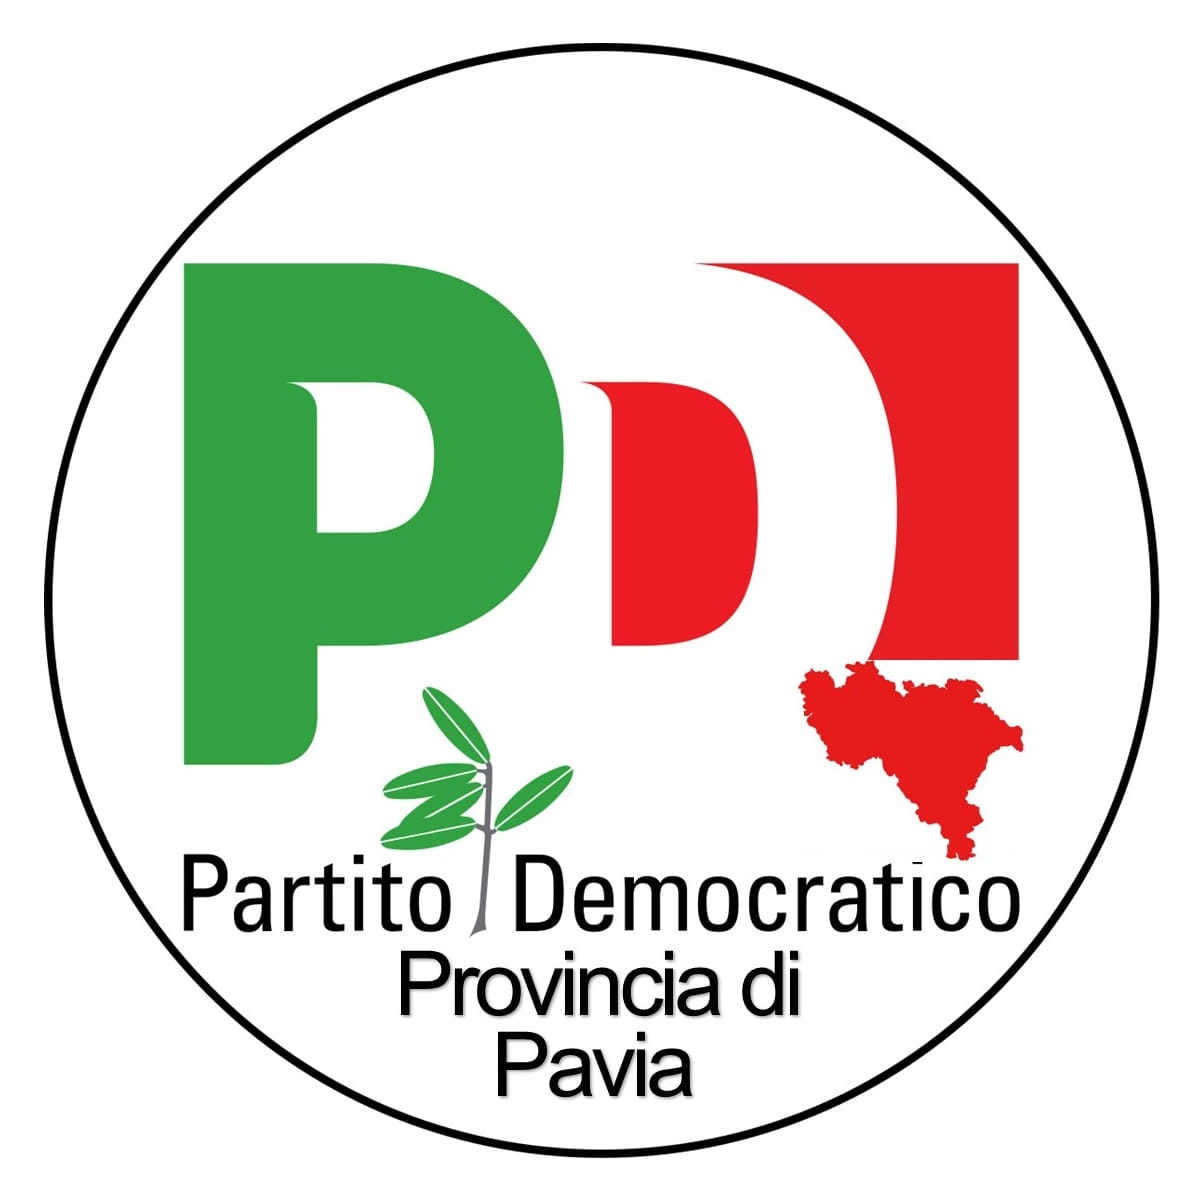 www.pdprovinciapavia.com